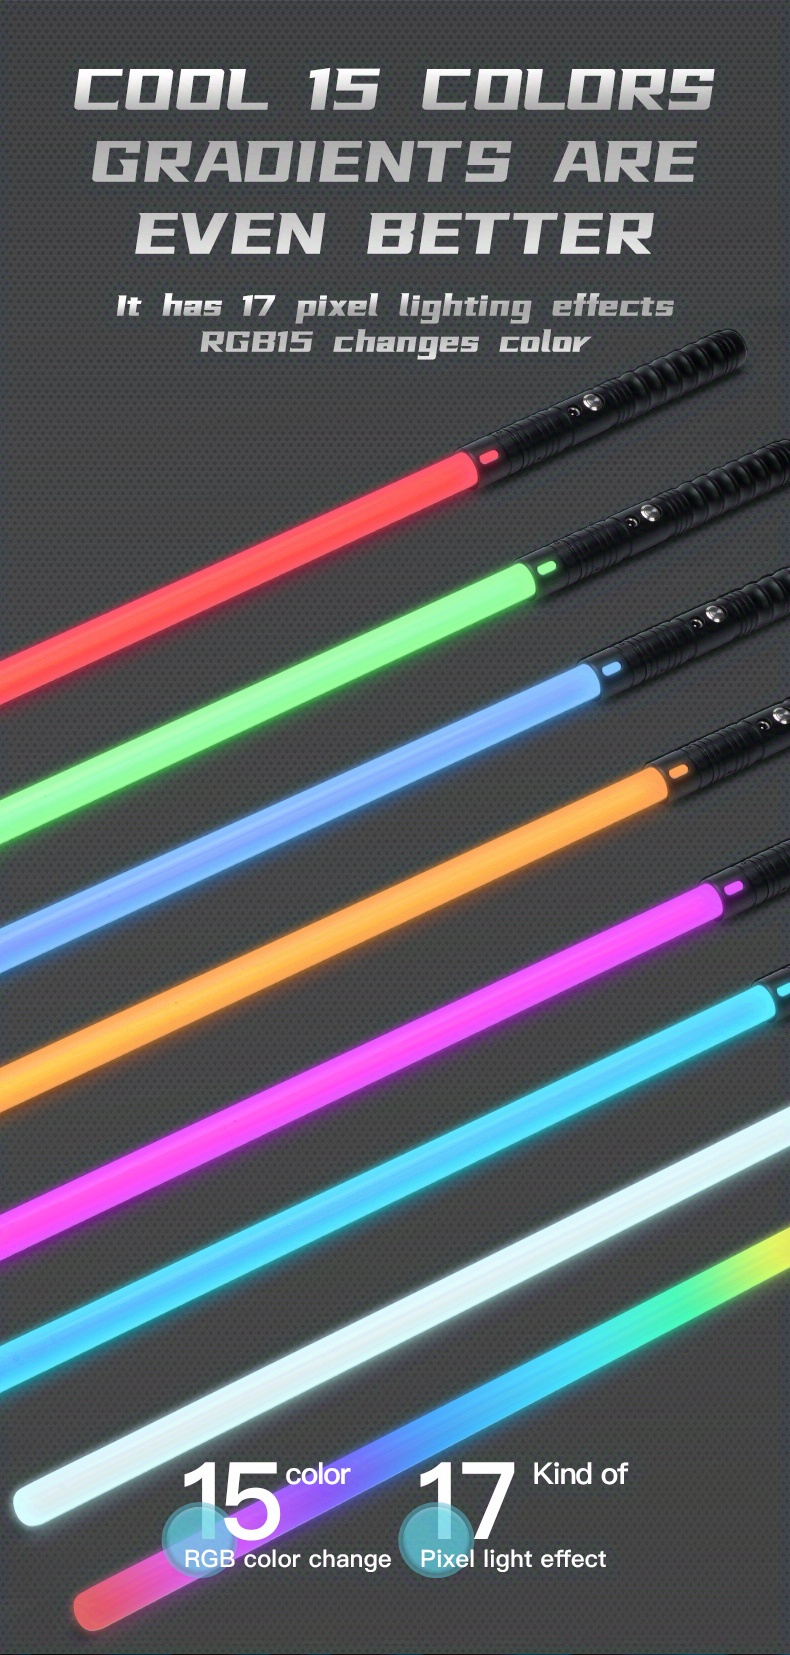  Sable láser 2 en 1 LED, espada incluye modo alterno de 6  colores, con sonido (sensible al movimiento) para guerreros de la galaxia  por Spooktacular Creations : Juguetes y Juegos